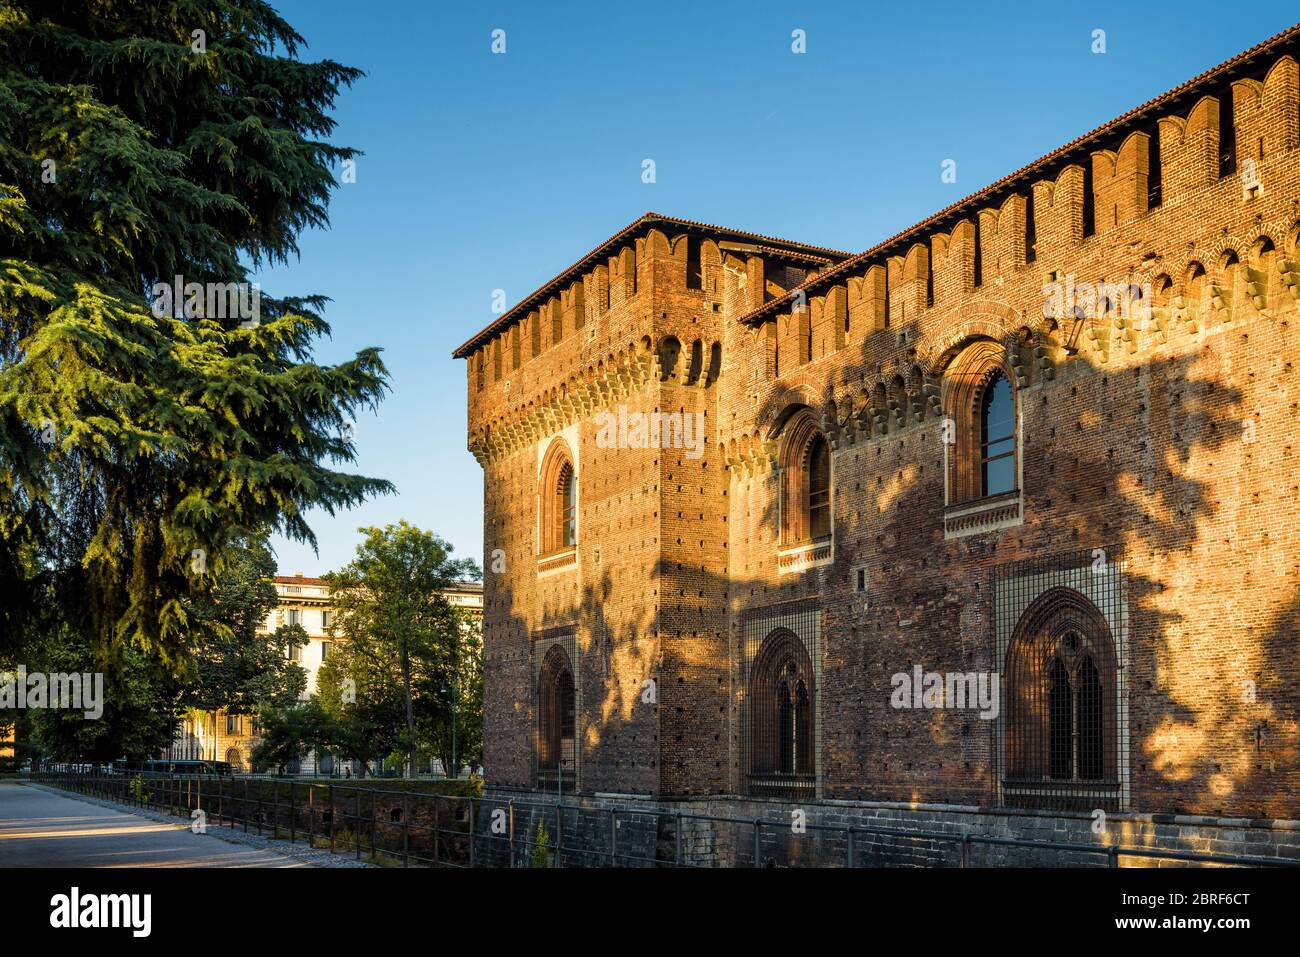 Sforza Castel (Castello Sforzesco) in Mailand, Italien. Diese Burg wurde im 15. Jahrhundert von Francesco Sforza, Herzog von Mailand, erbaut. Stockfoto